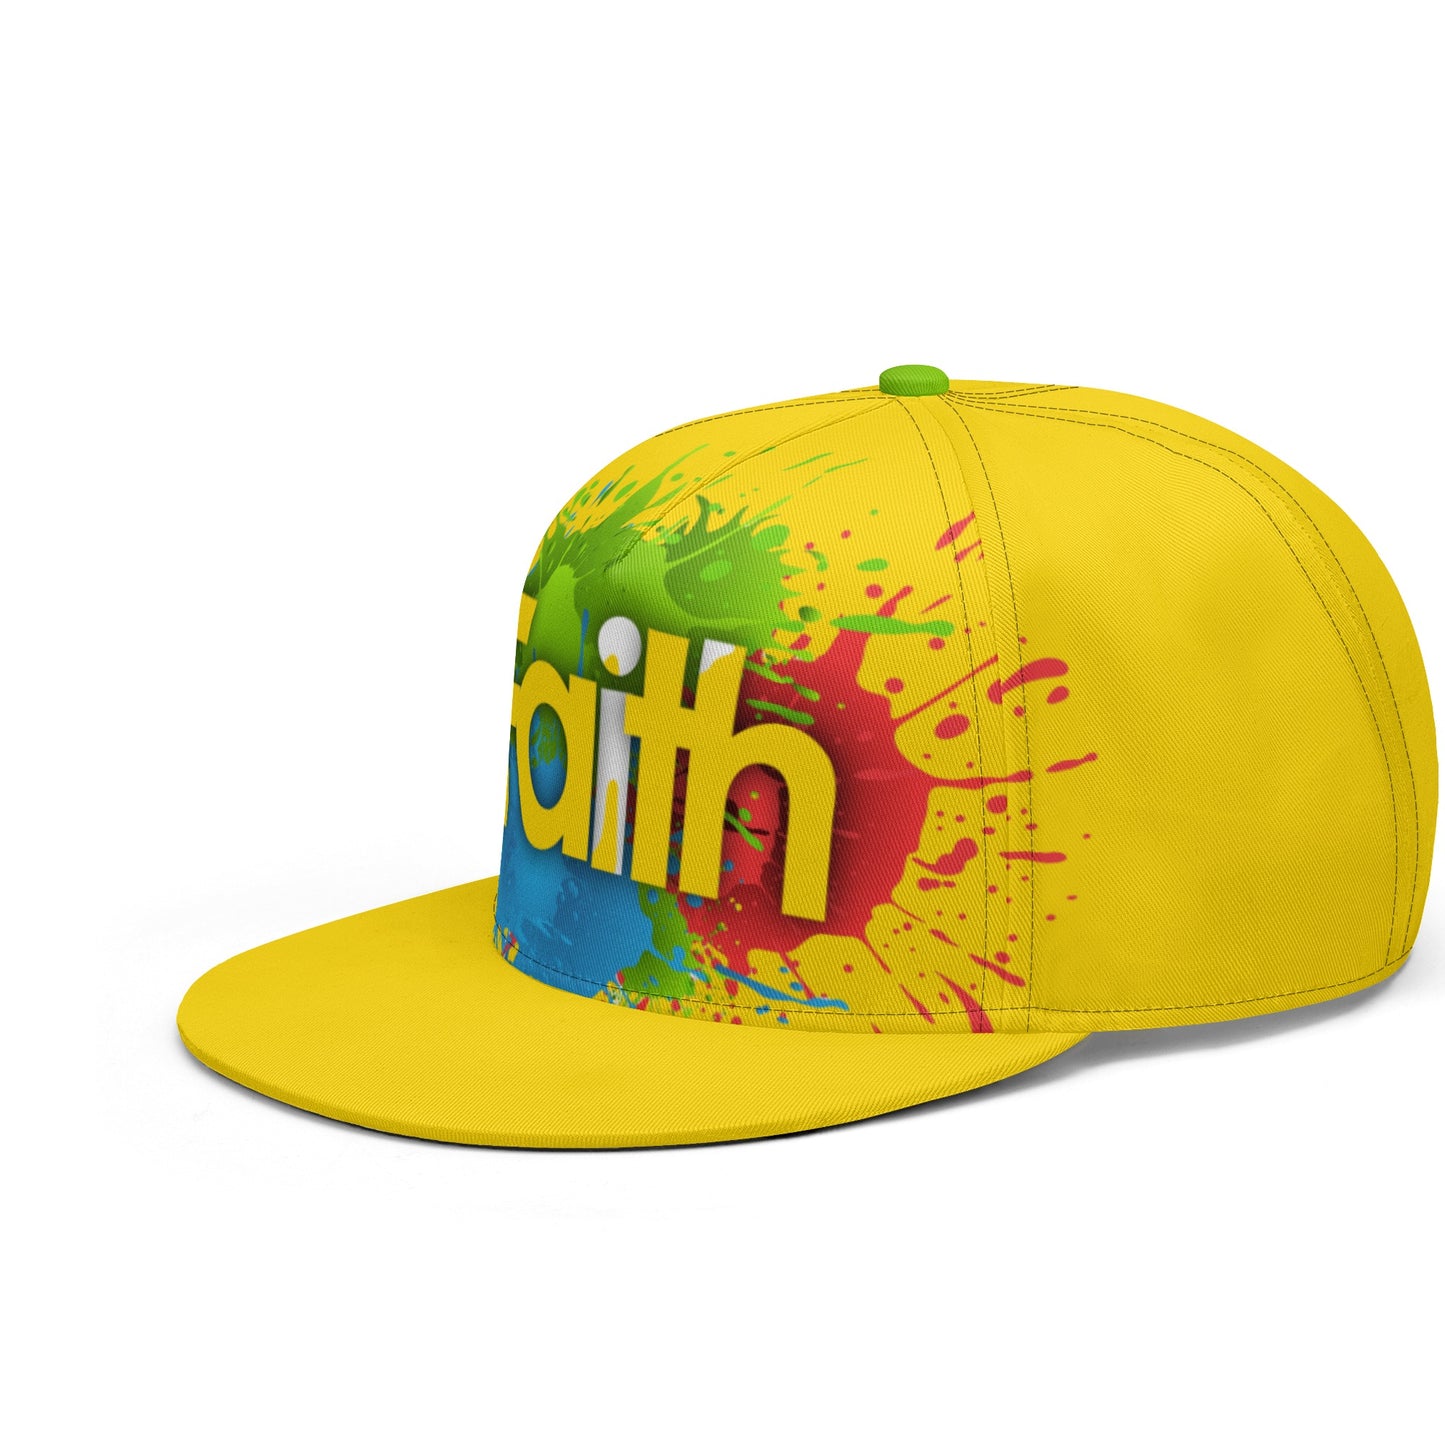 T4x Yellow Faith All Hip-hop Cap